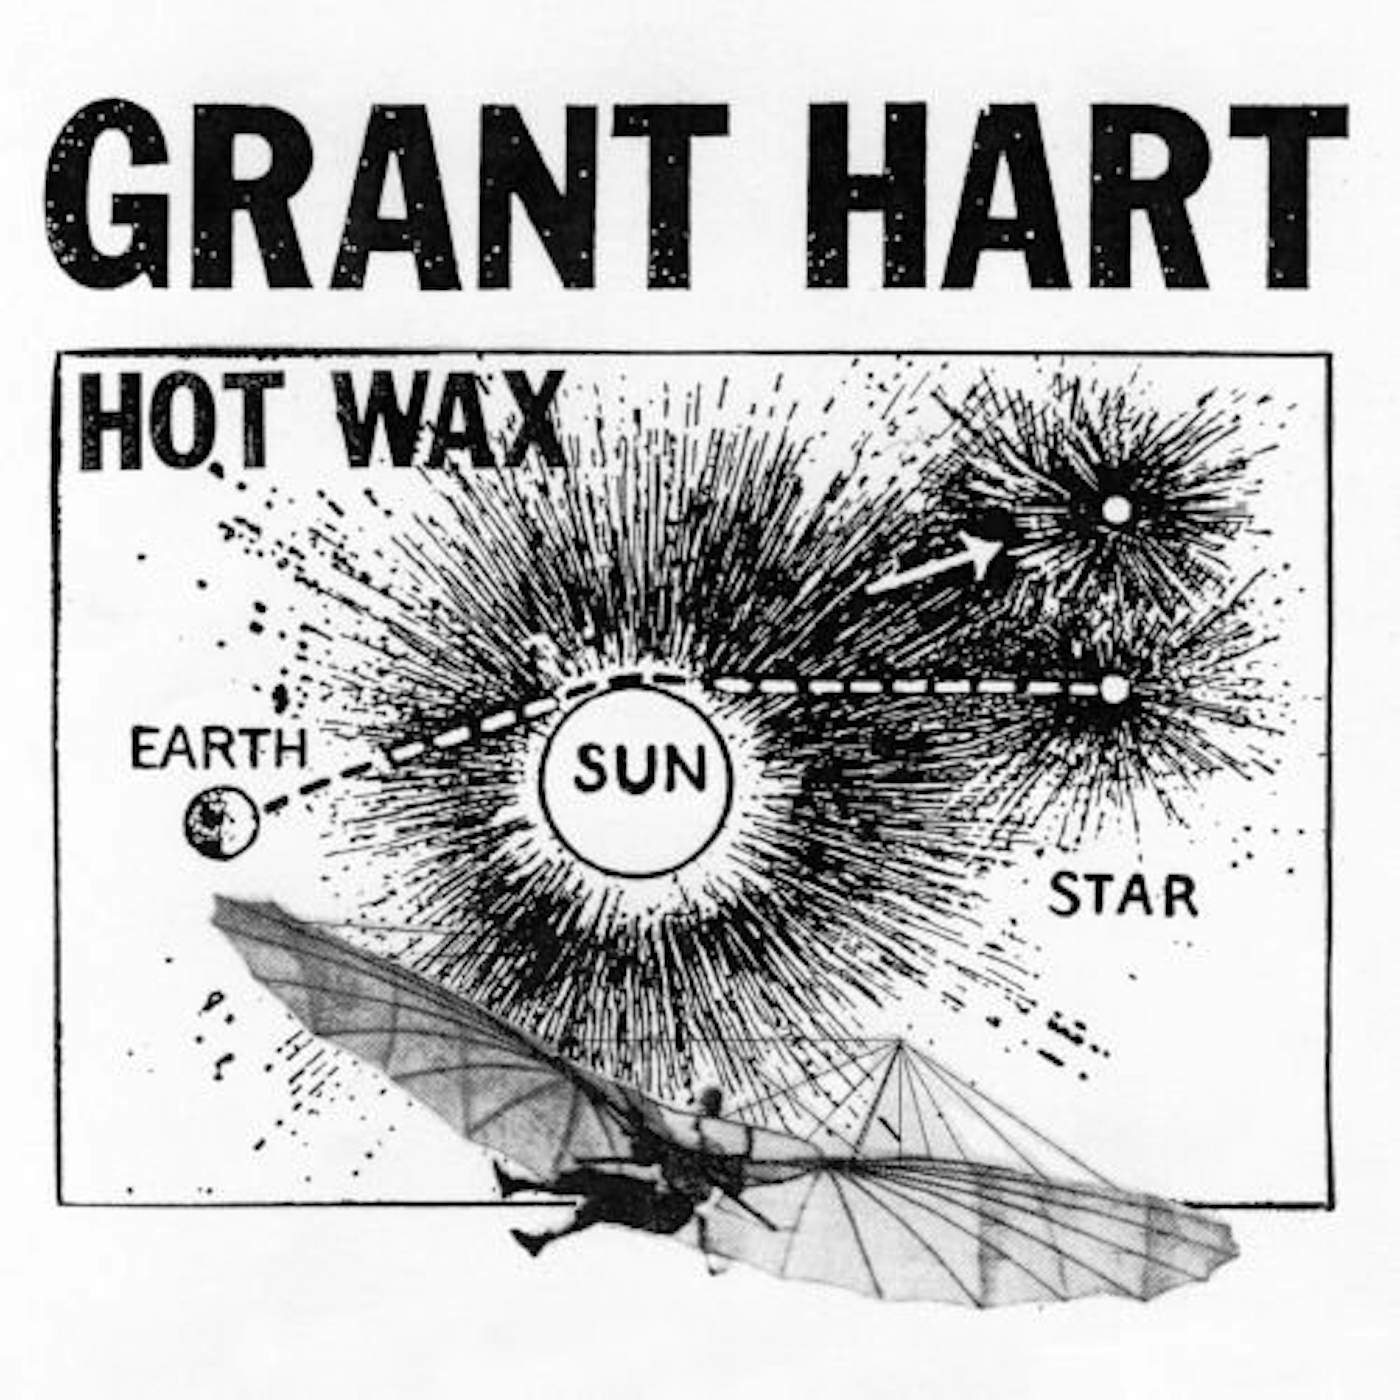 Grant Hart Hot Wax Vinyl Record